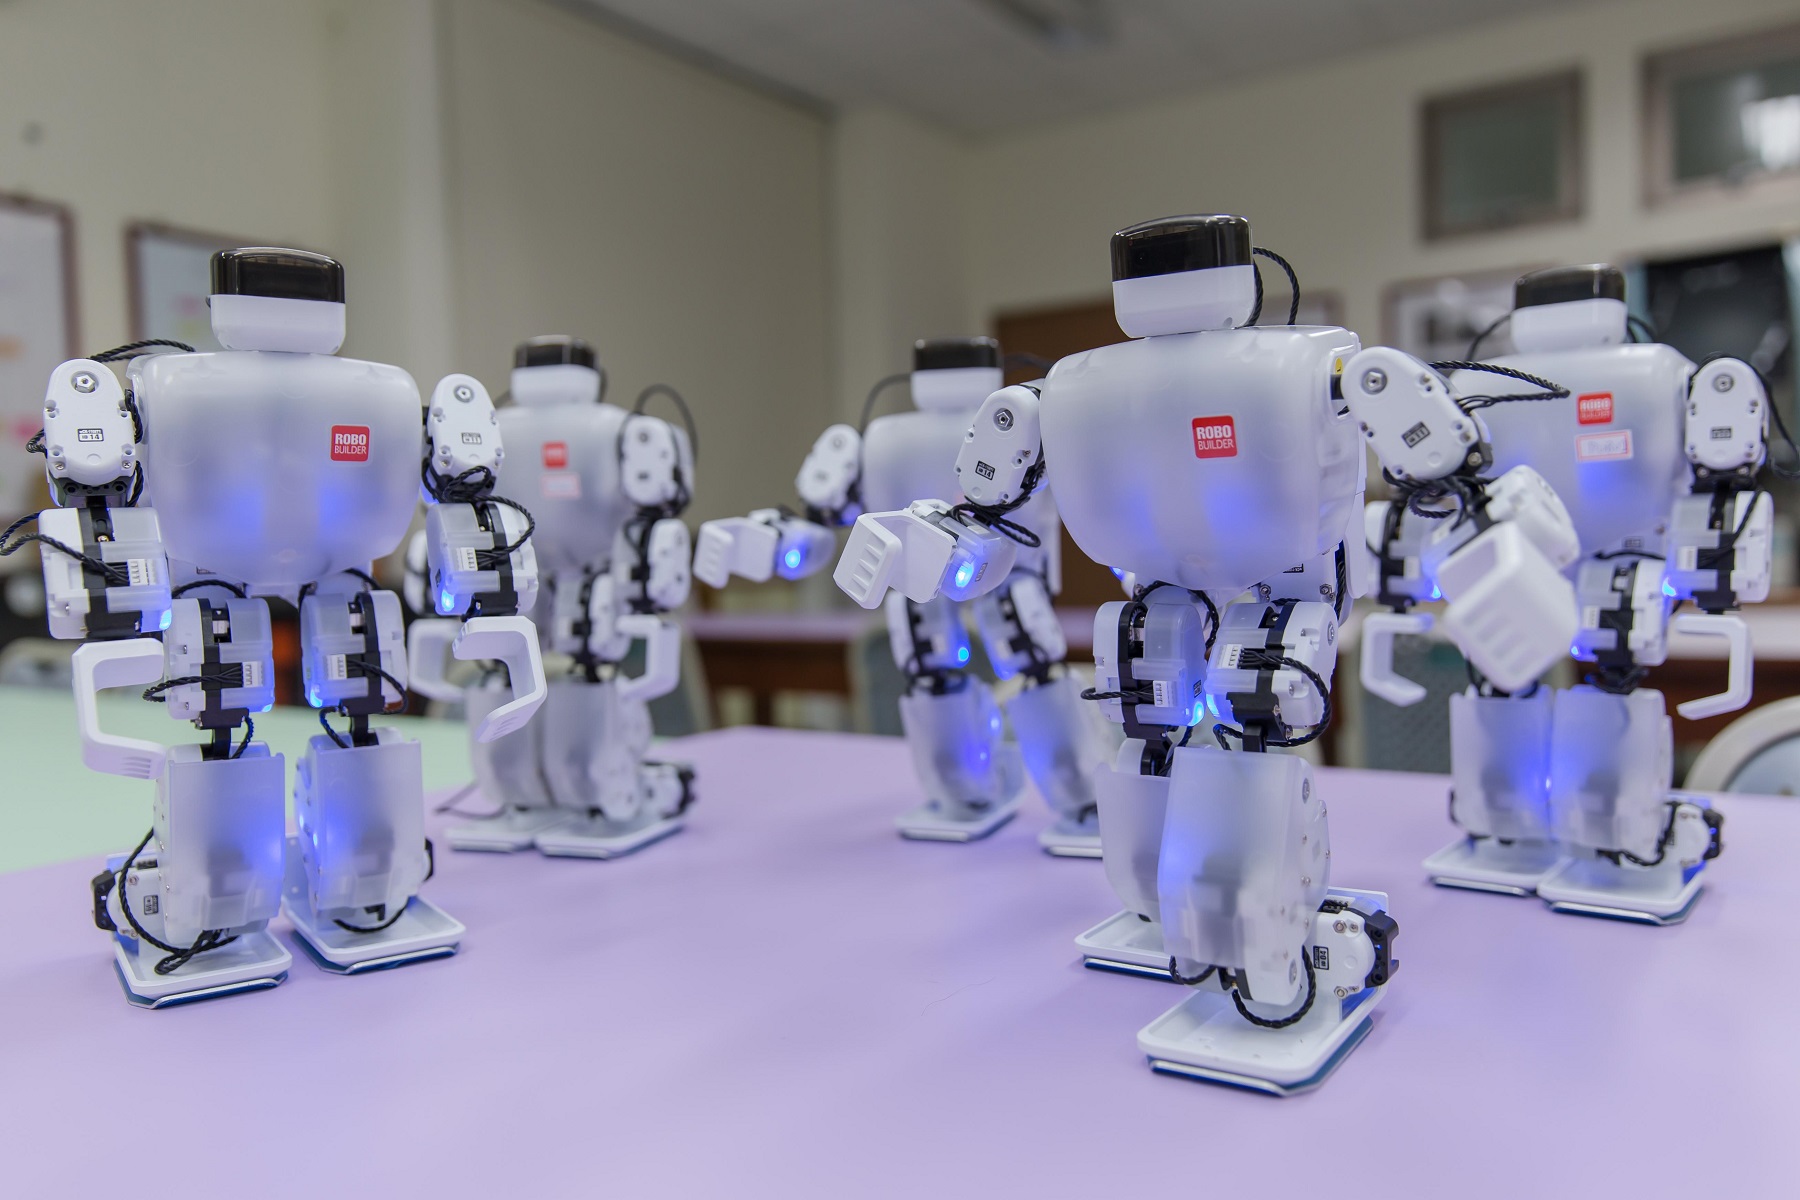 聖約翰科大工管系引入藍牙機器人教學模組，藉由一系列課程與實作模擬，讓學生透過「做中學」學習最新科技與技術